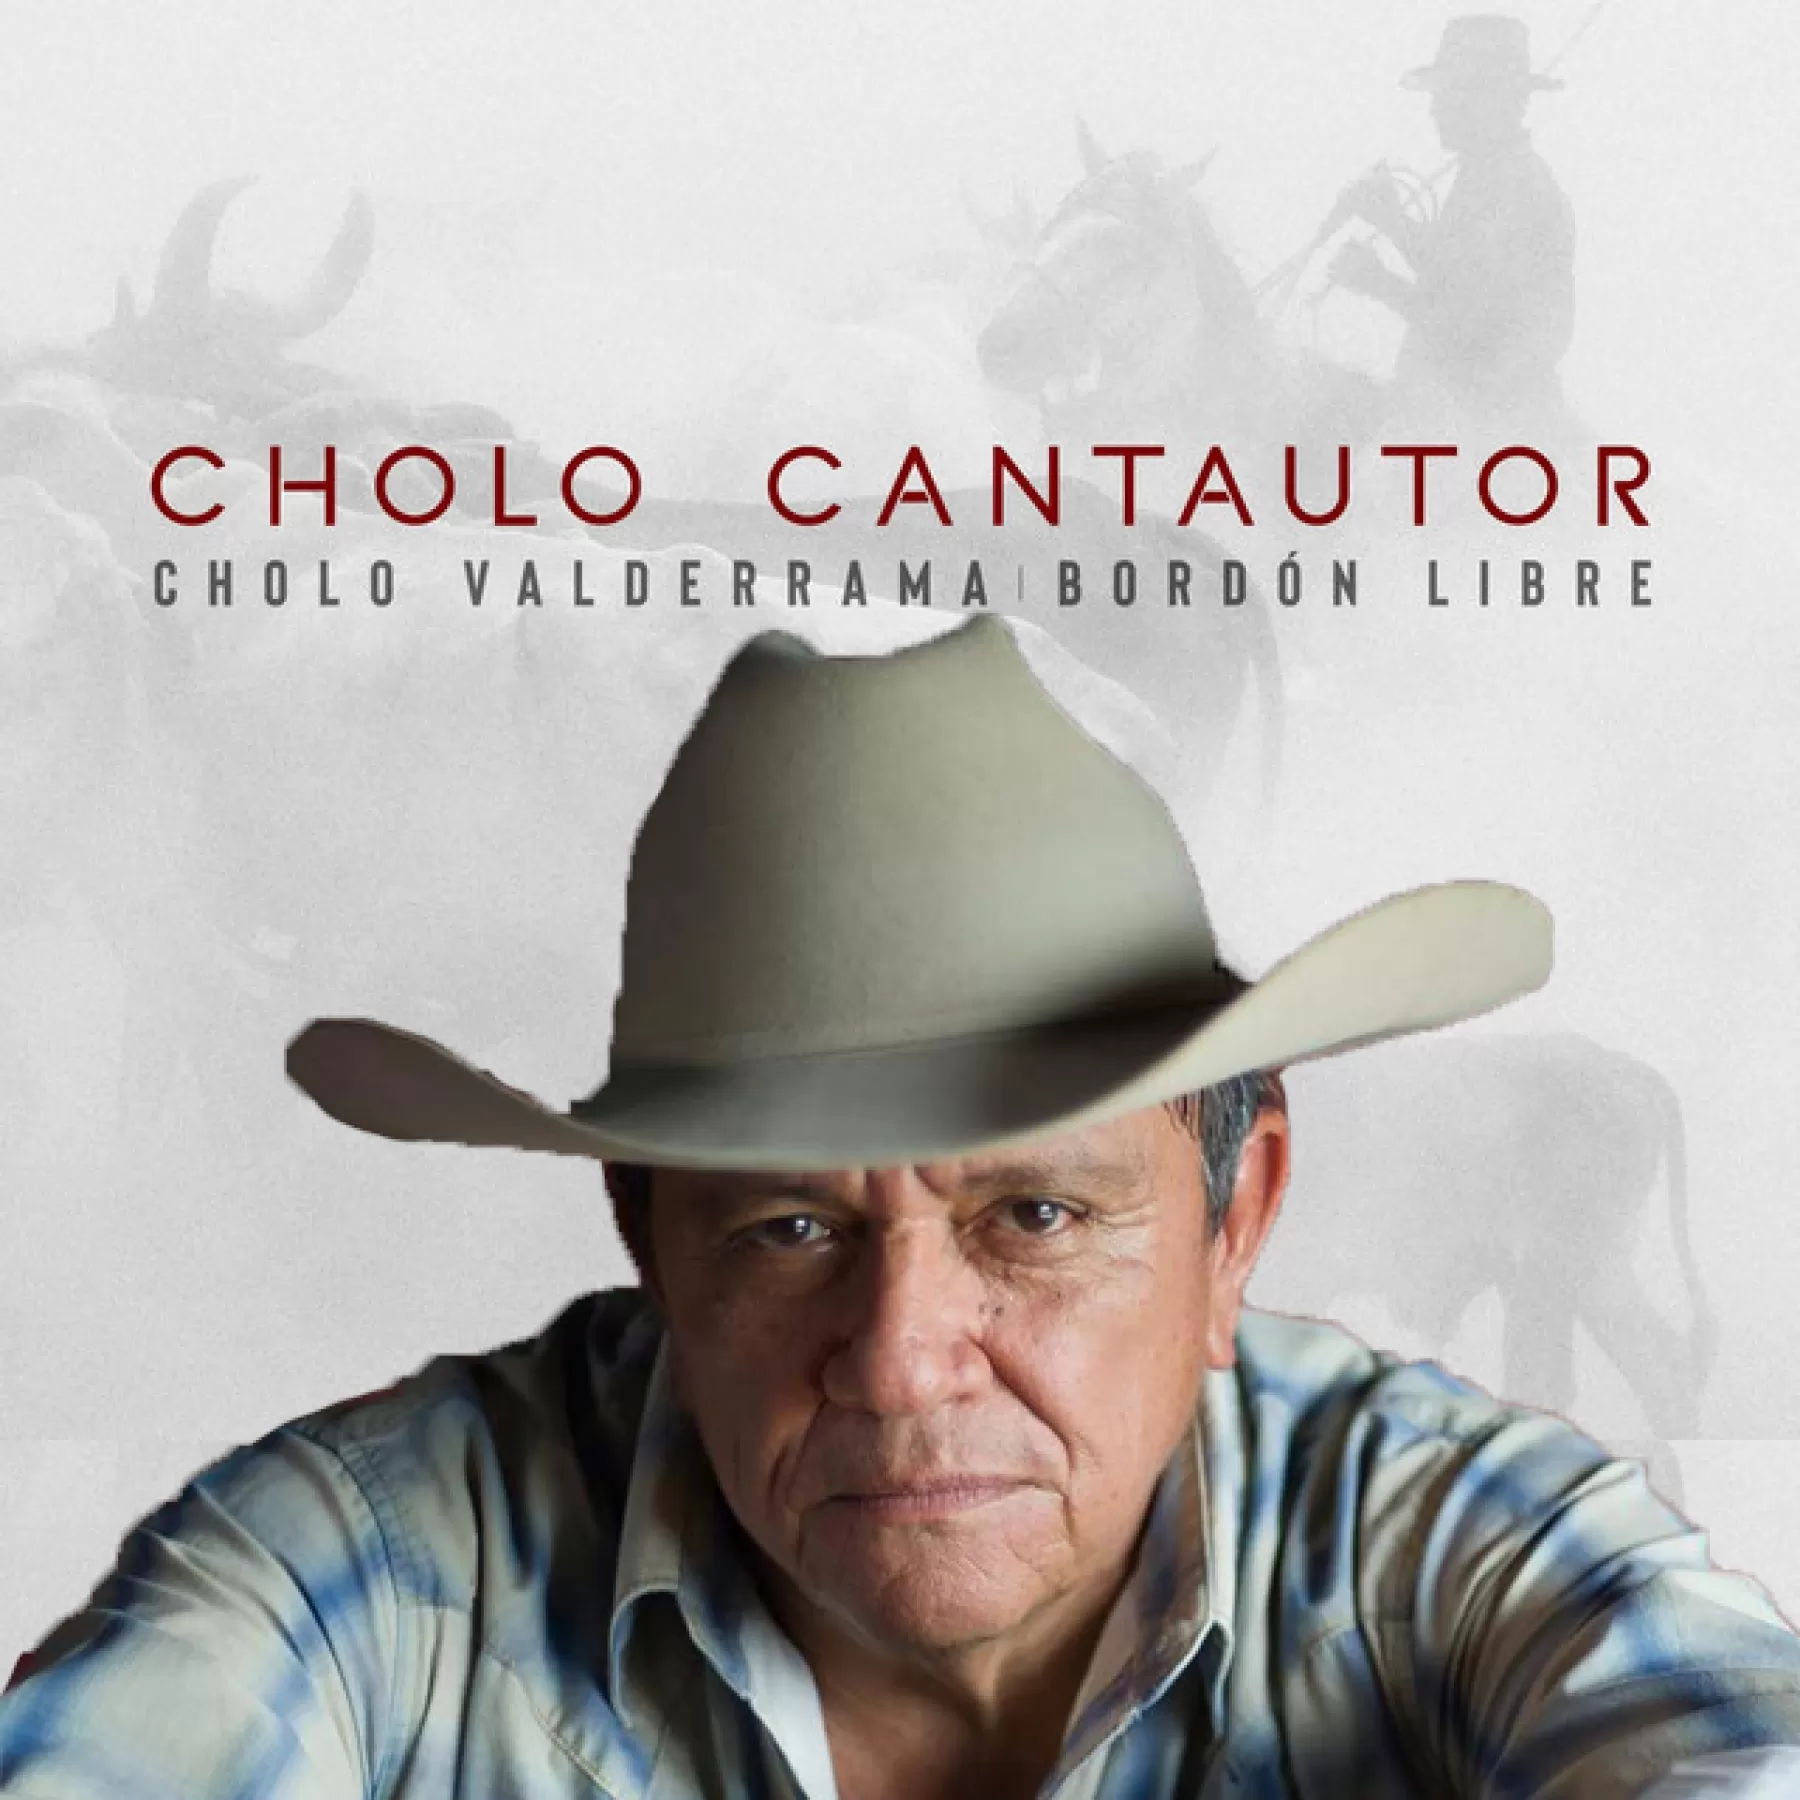 Orlando "El Cholo" Valderrama trae su nuevo trabajo discográfico Cholo Cantautor